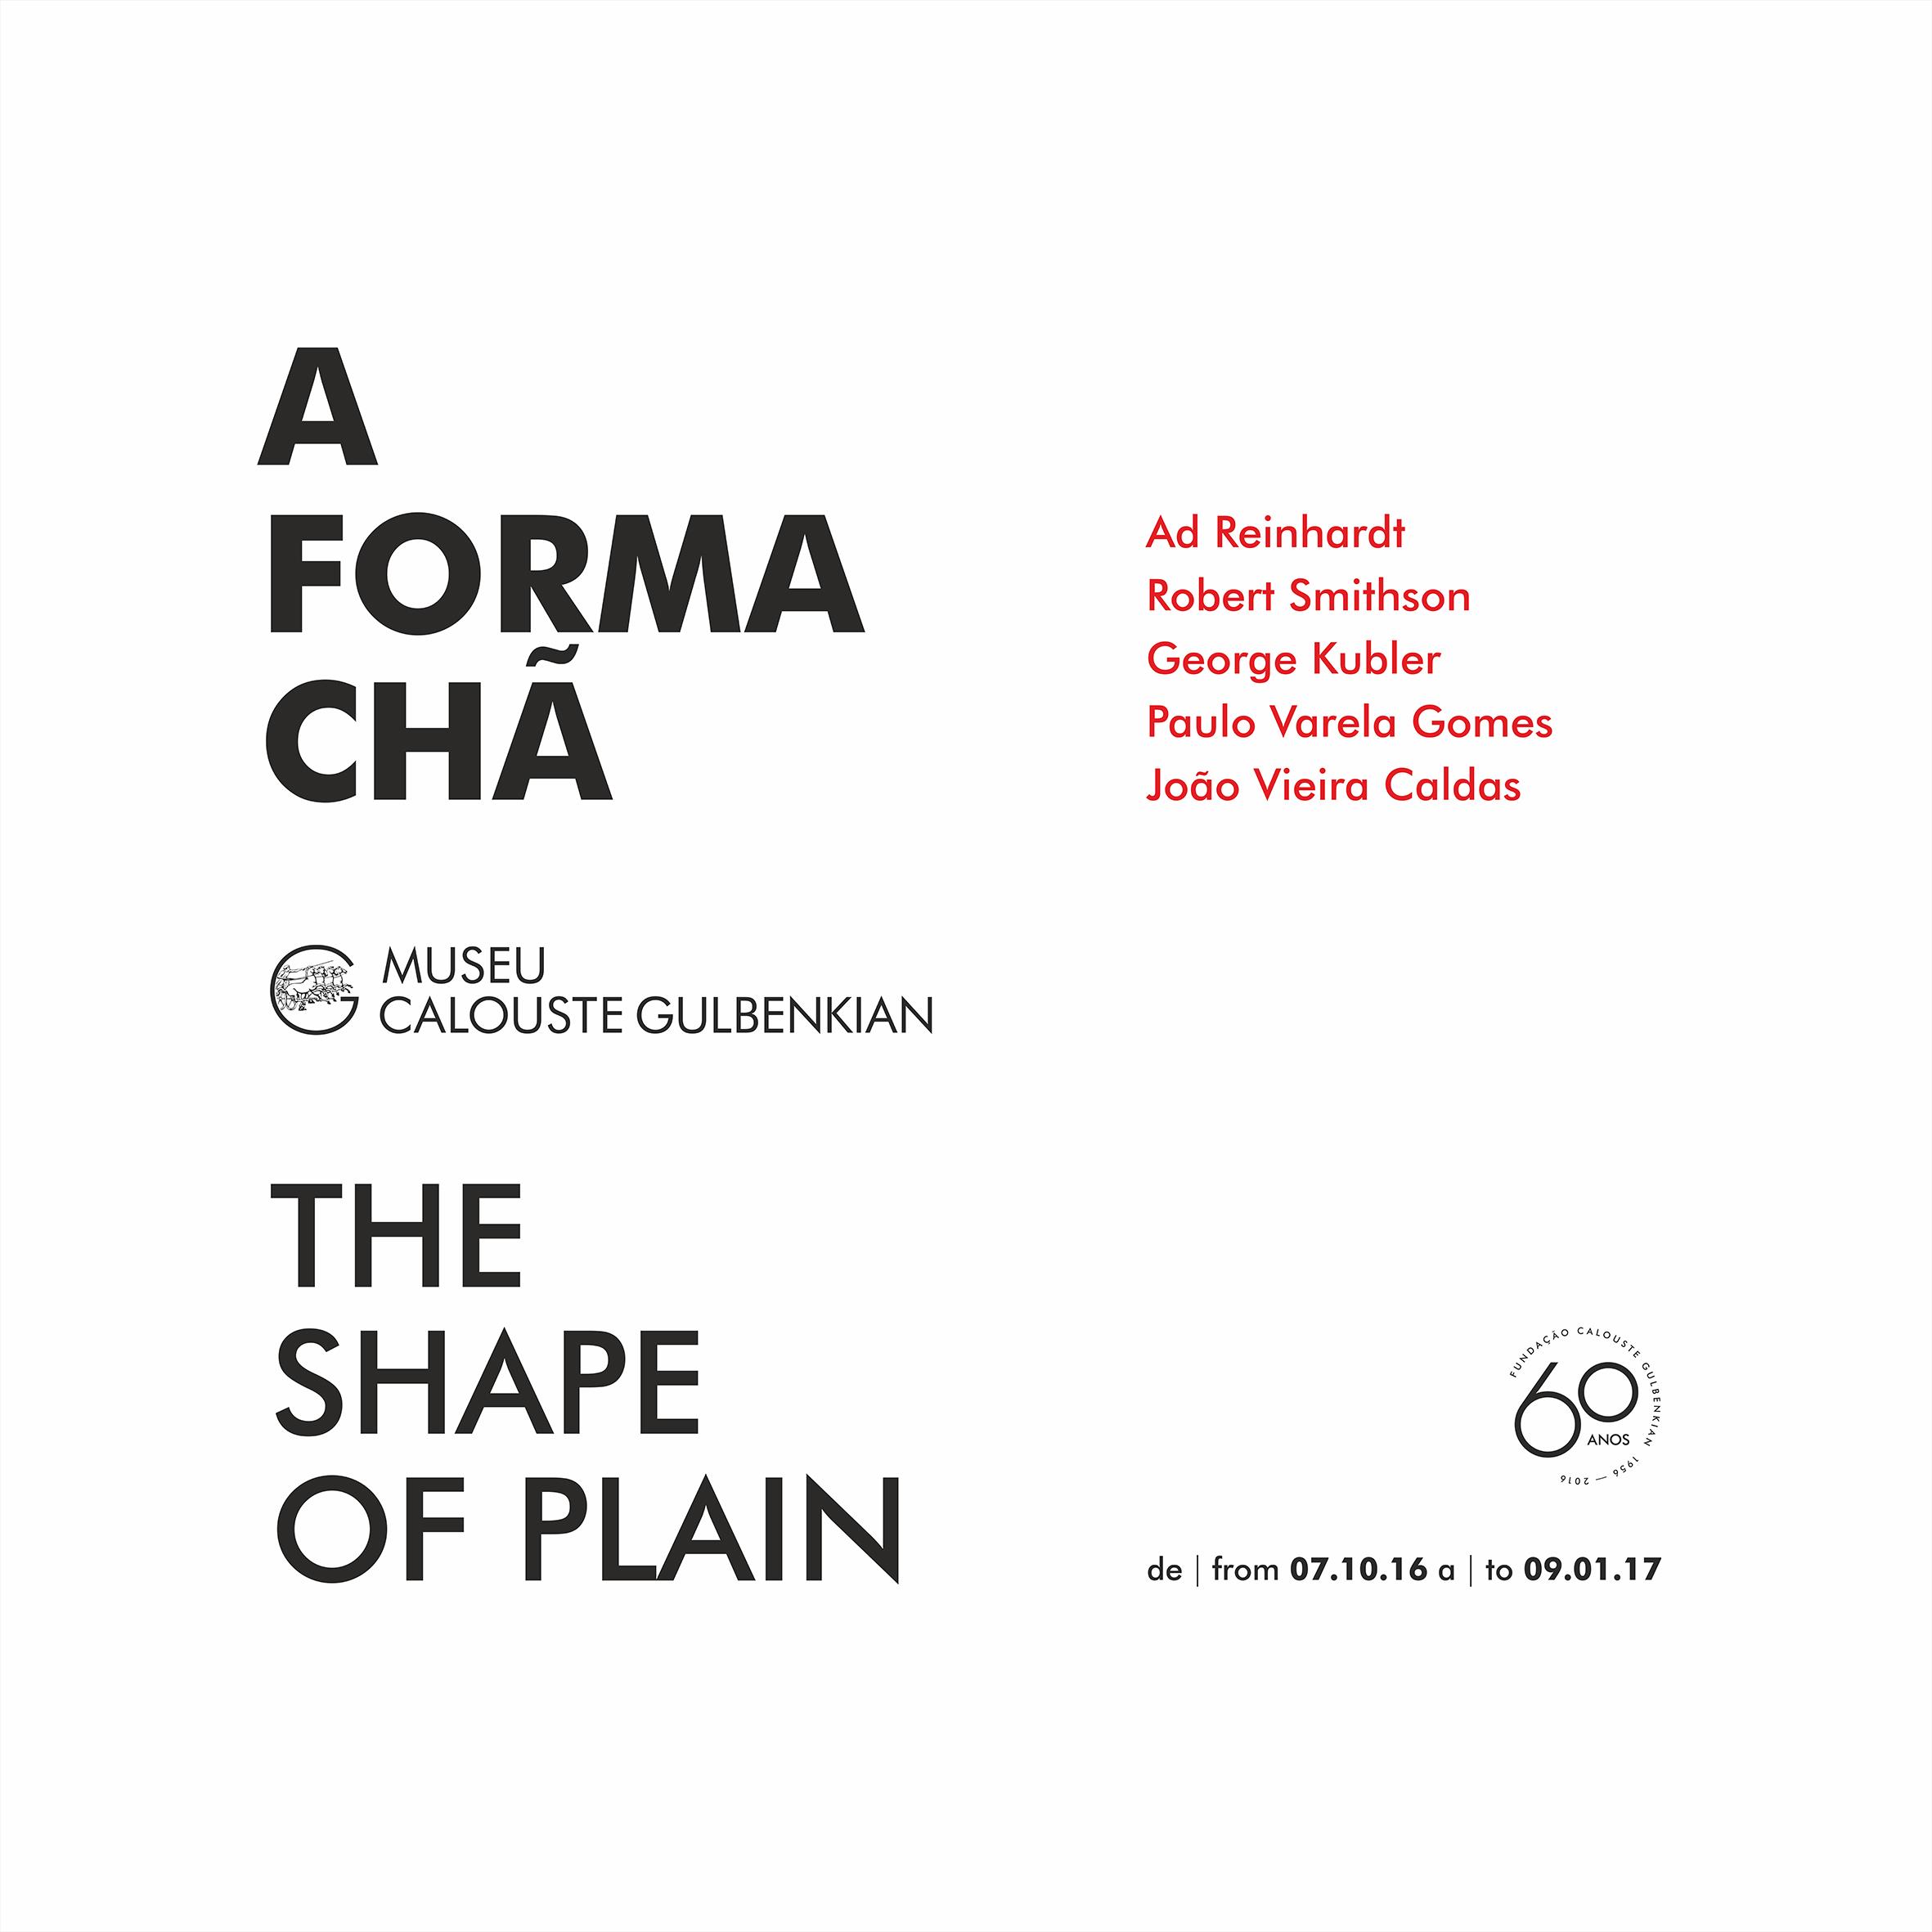 A Forma Chã. The Shape of Plain